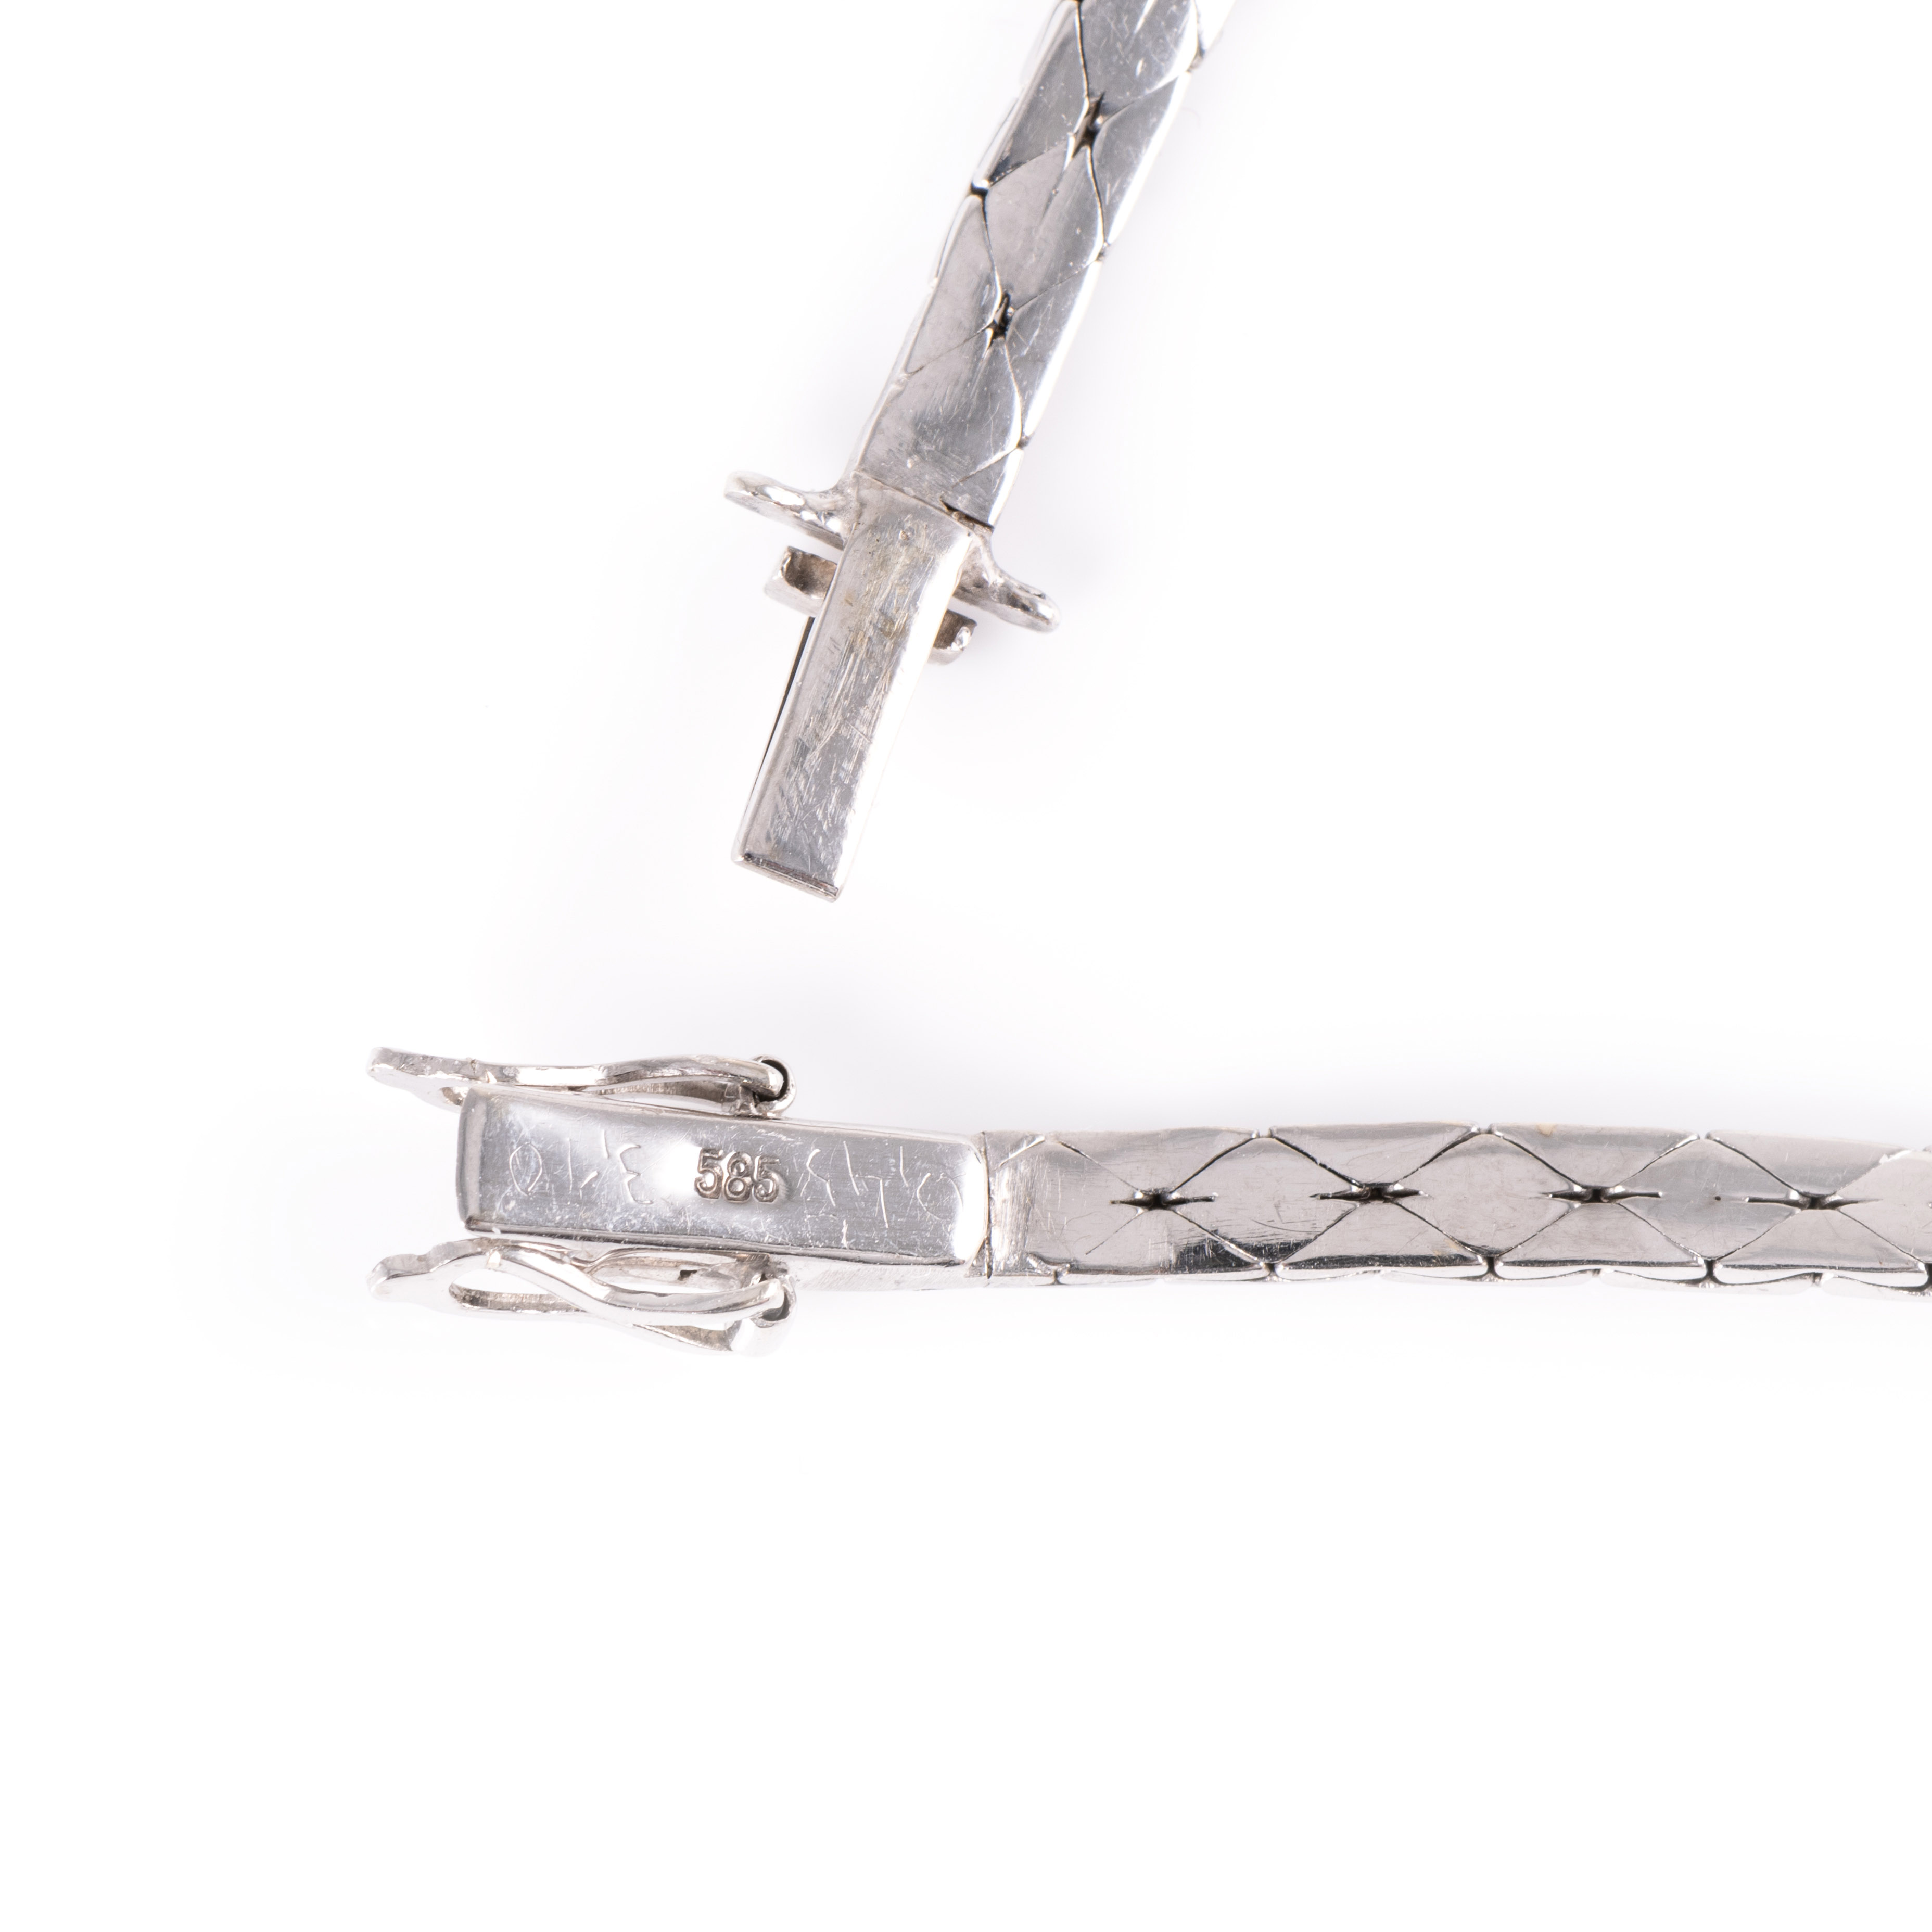 Collier und Armband mit Brillant-Saphirbesatz - Image 8 of 8